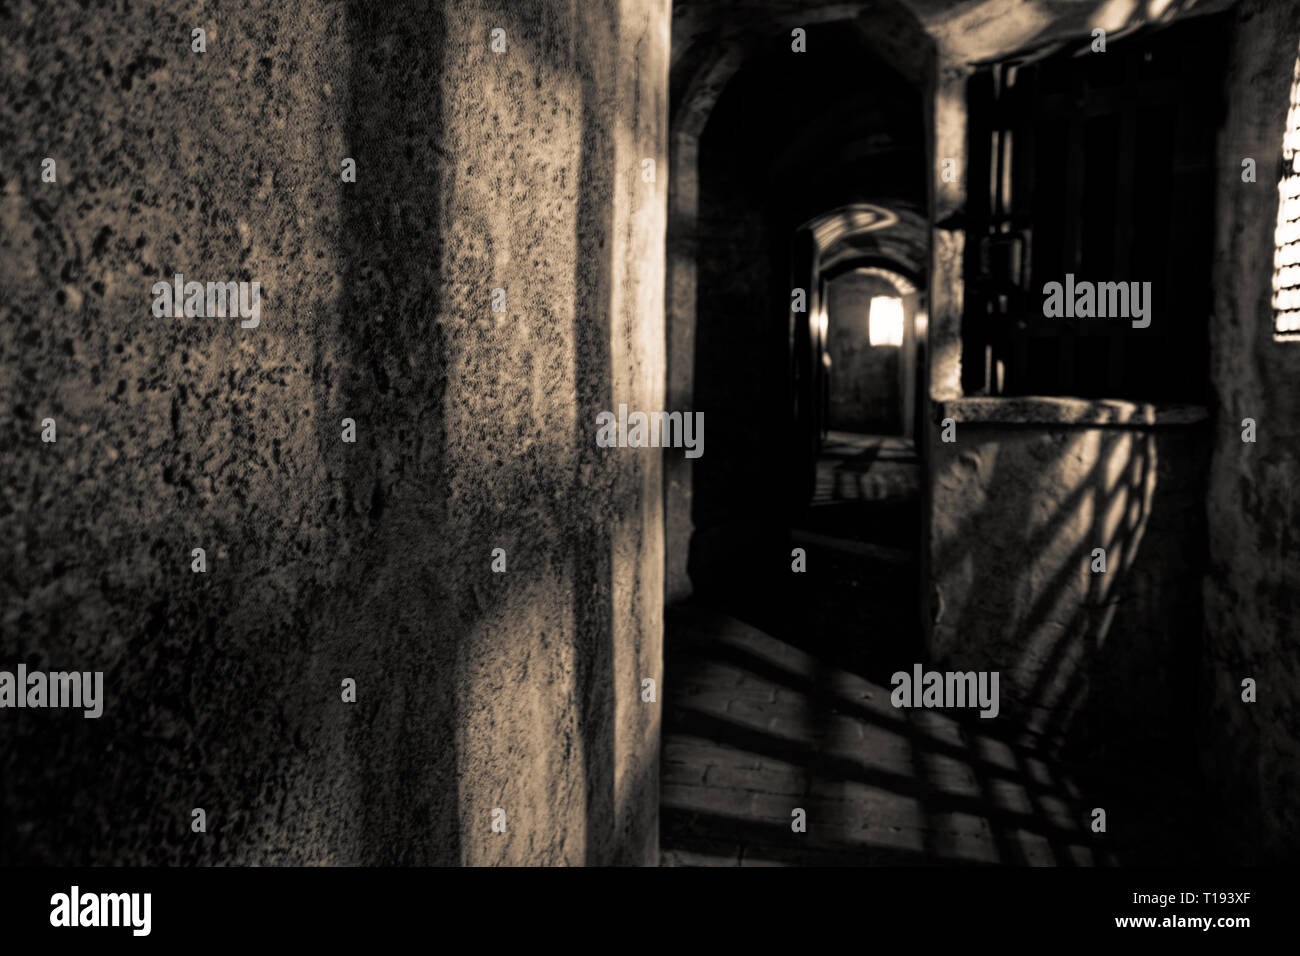 Casemates medievale, antico carcere di pietra, luci nel tunnel come speranza Foto Stock